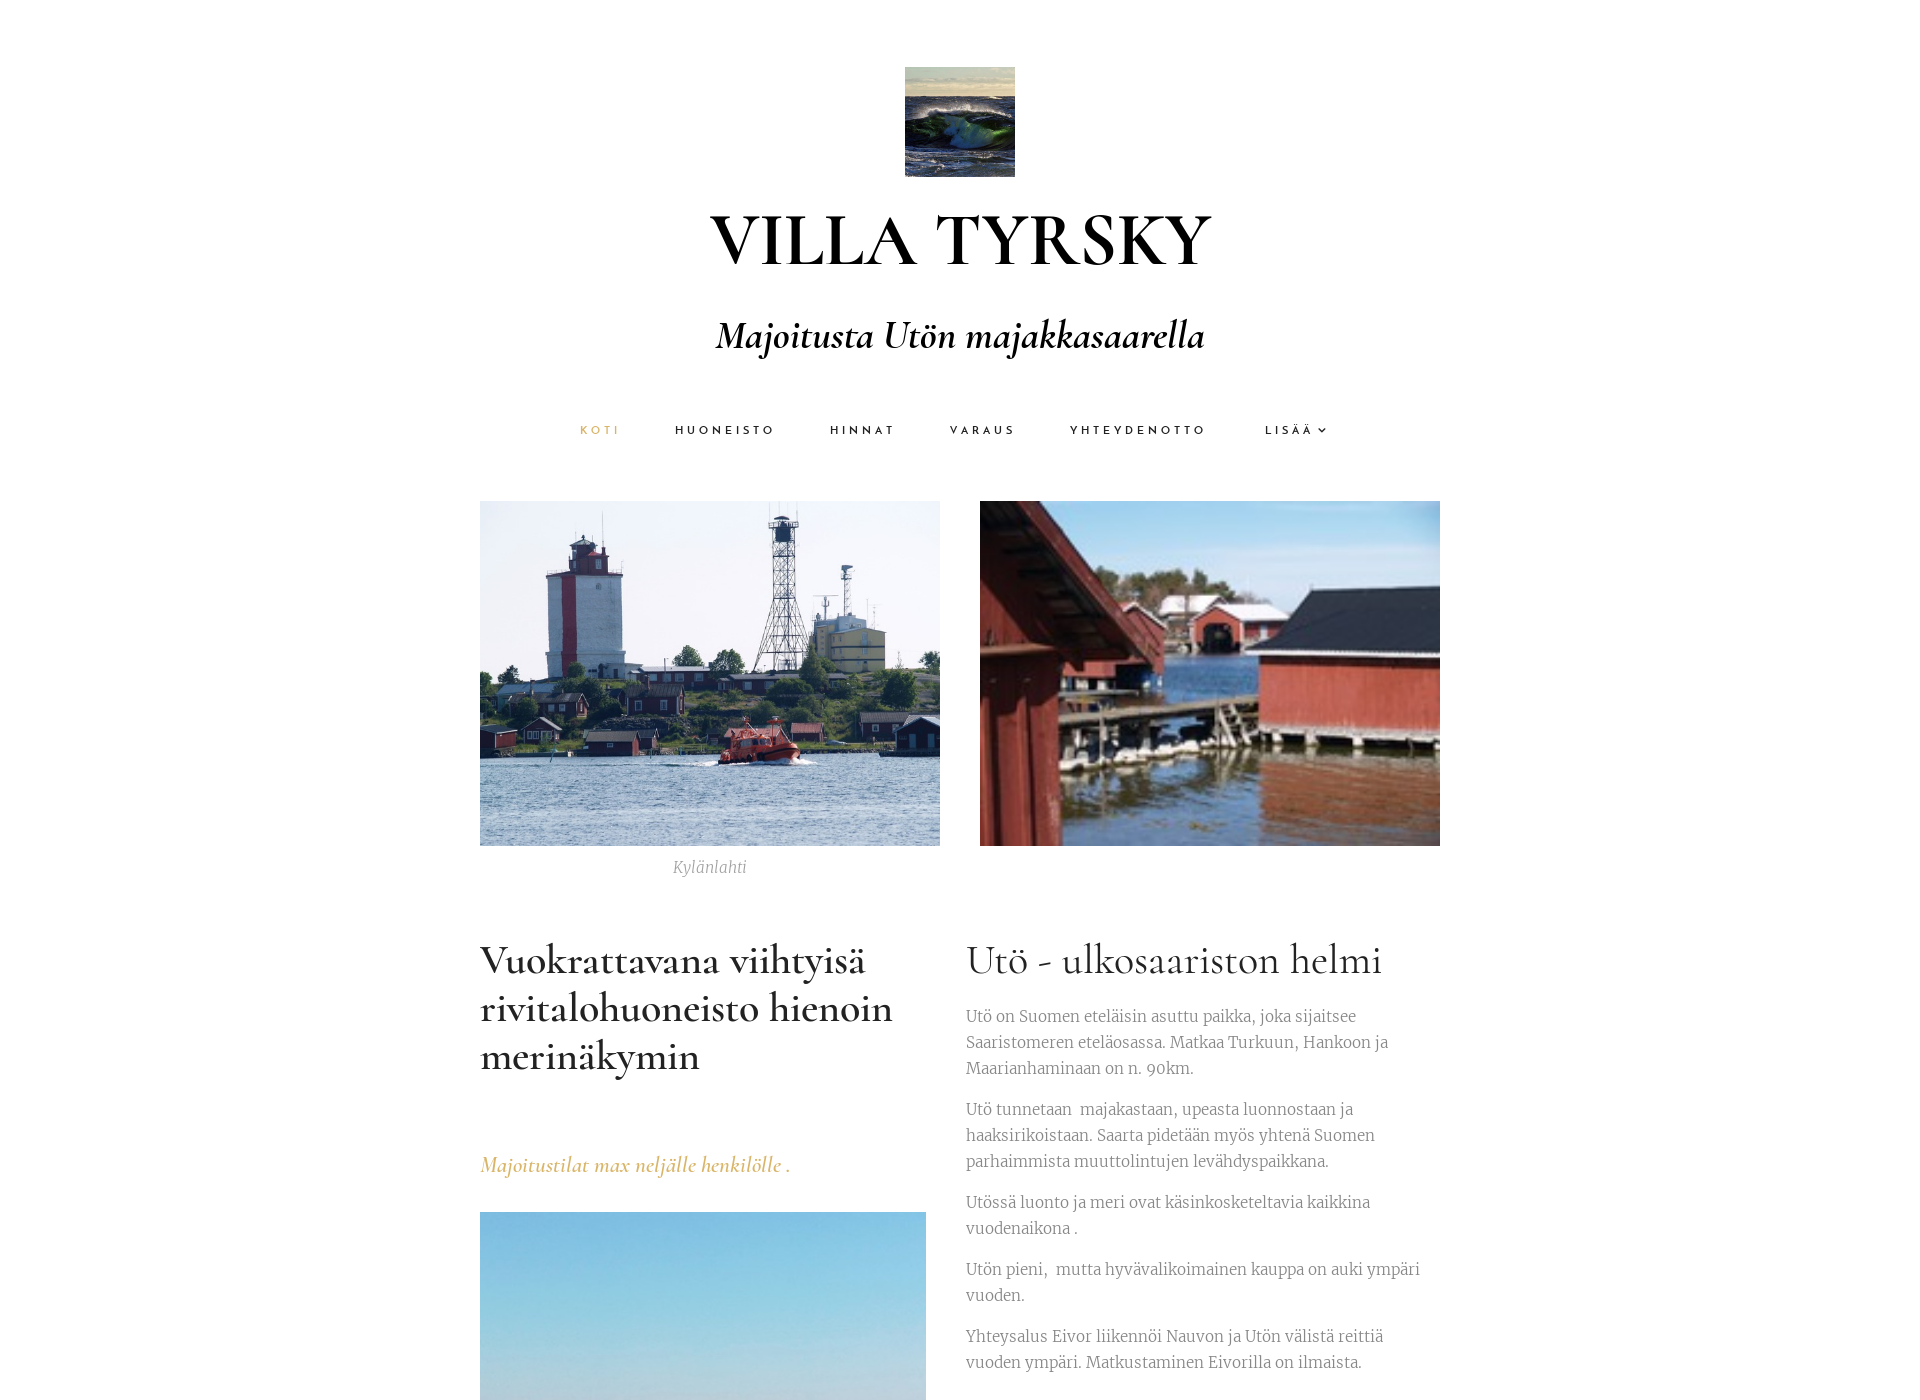 Näyttökuva villatyrsky.fi